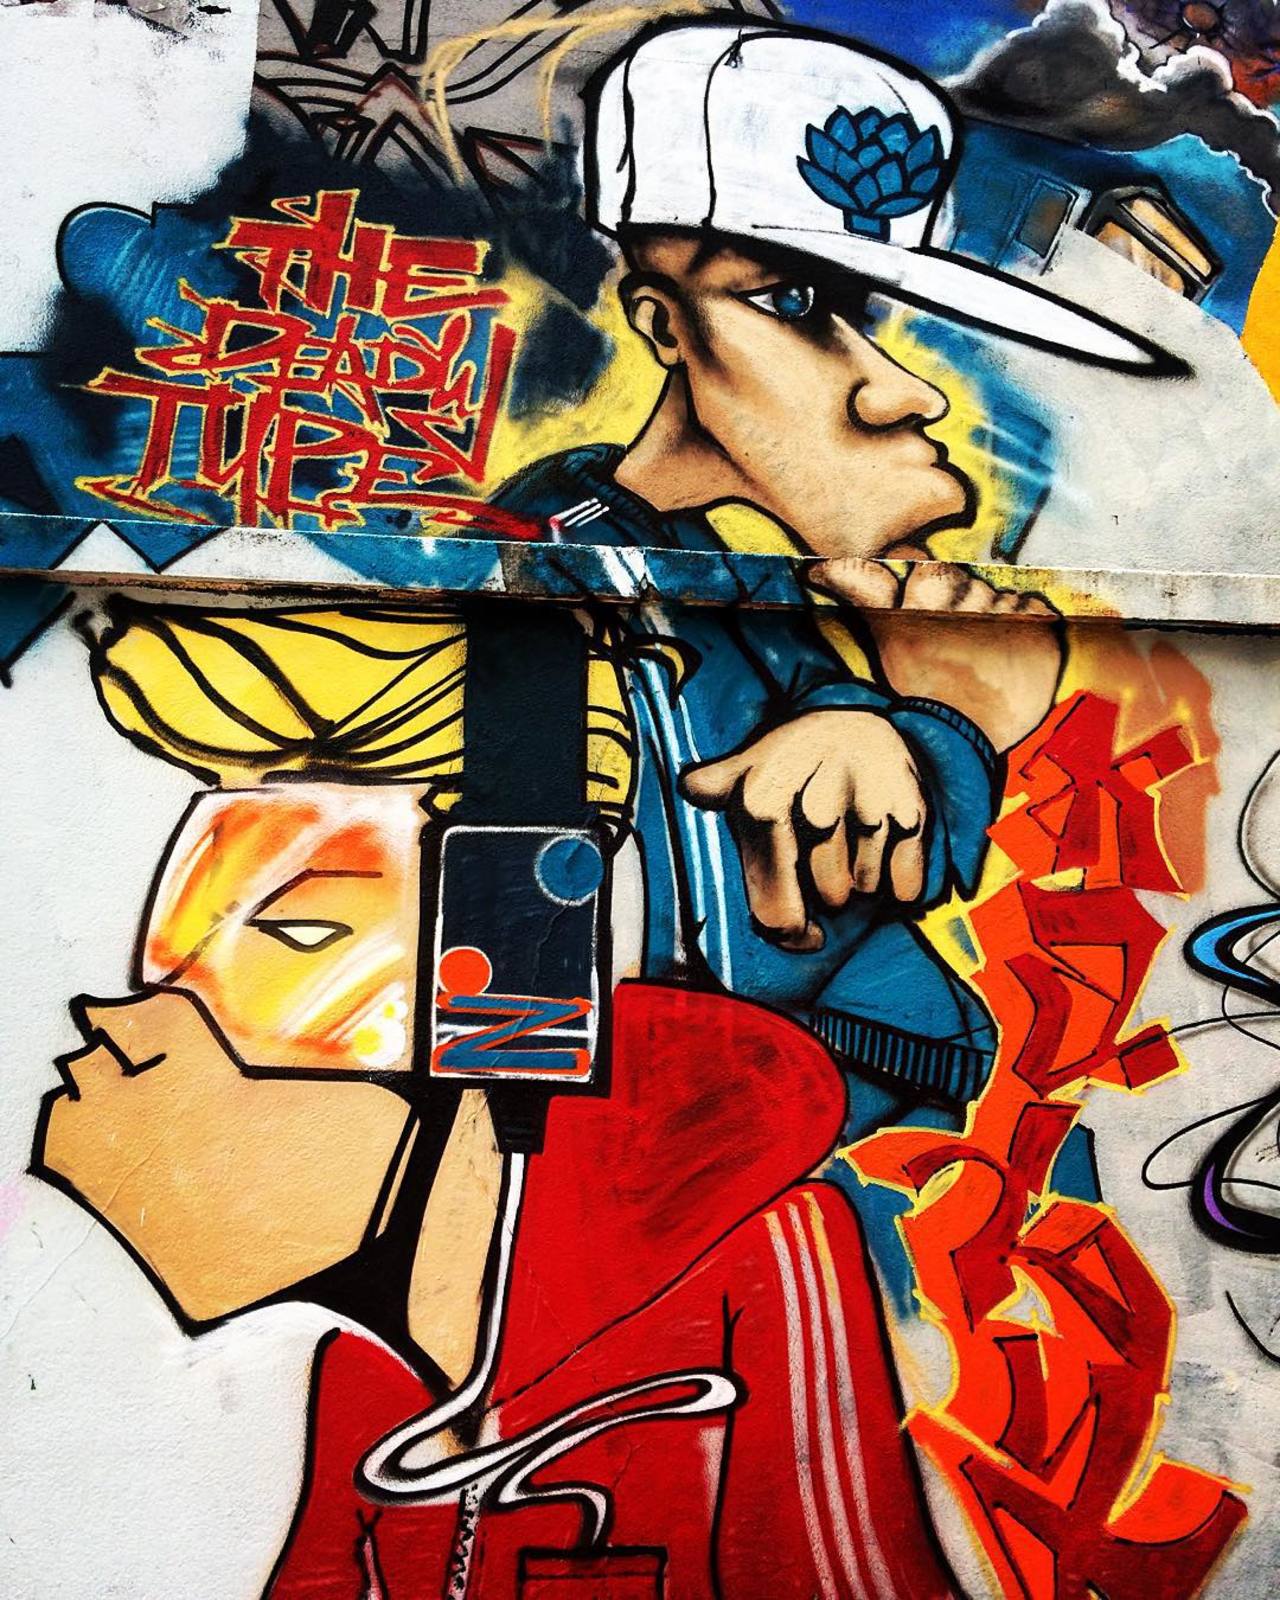 #Paris #graffiti photo by @julosteart http://ift.tt/1jsVWWI #StreetArt http://t.co/j2qnX9DX2l